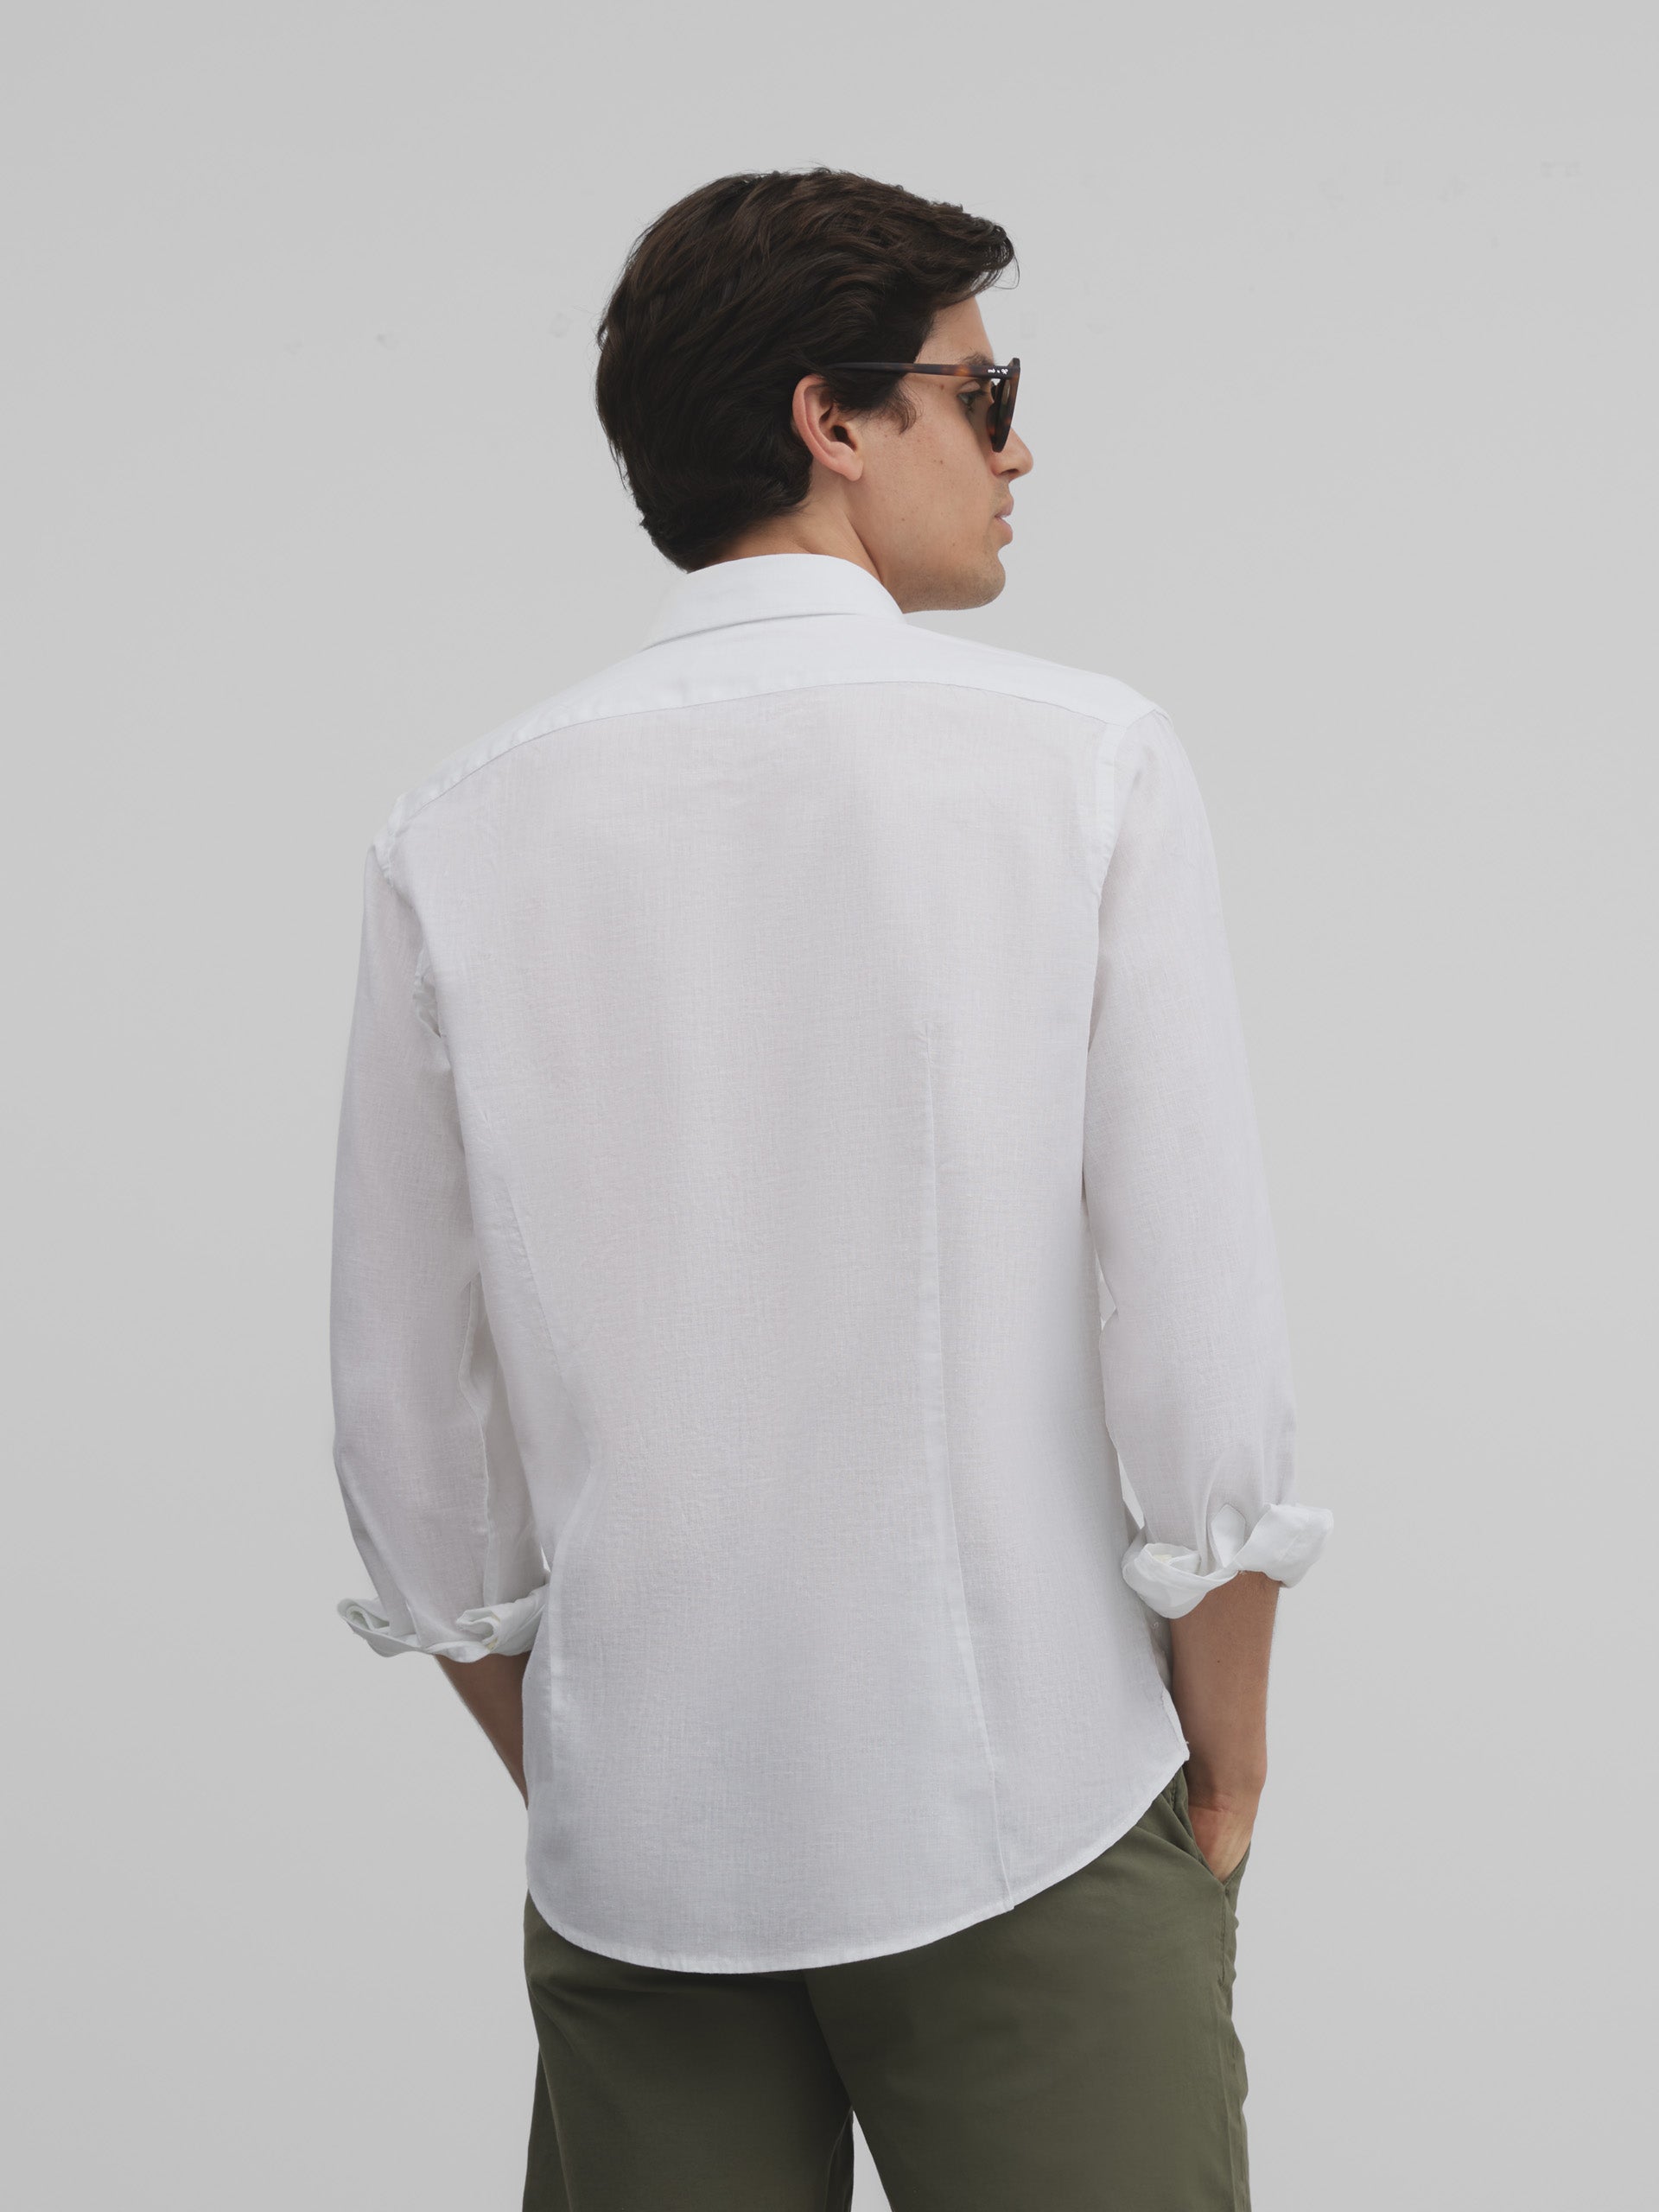 Silbon soft casual white sport shirt